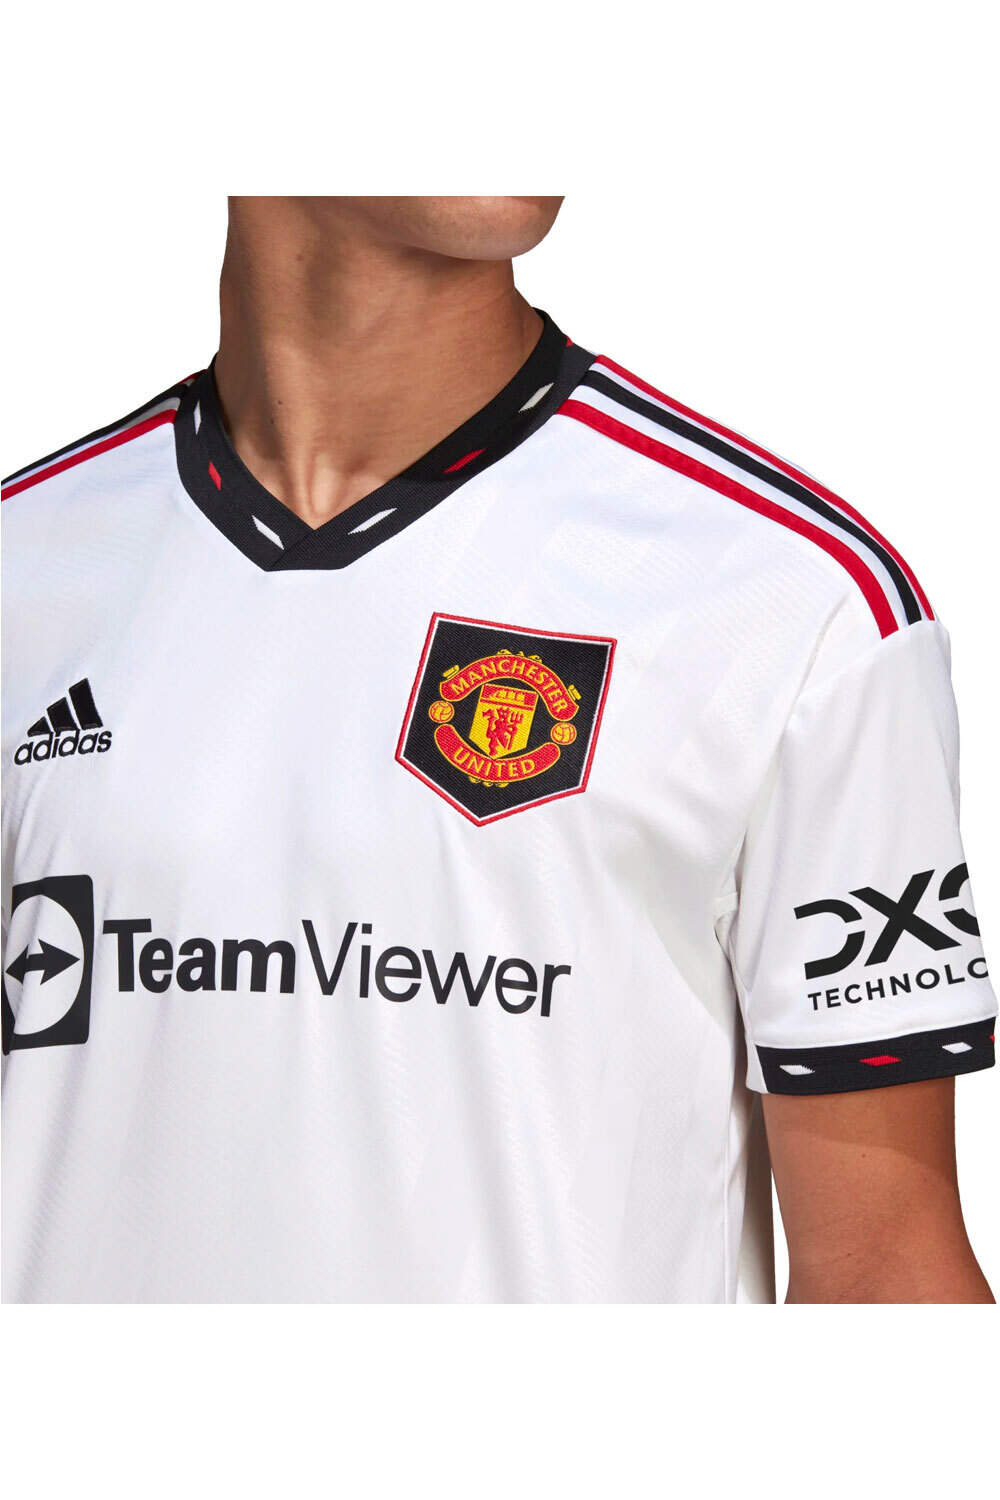 adidas camiseta de fútbol oficiales Manchester United FC 03